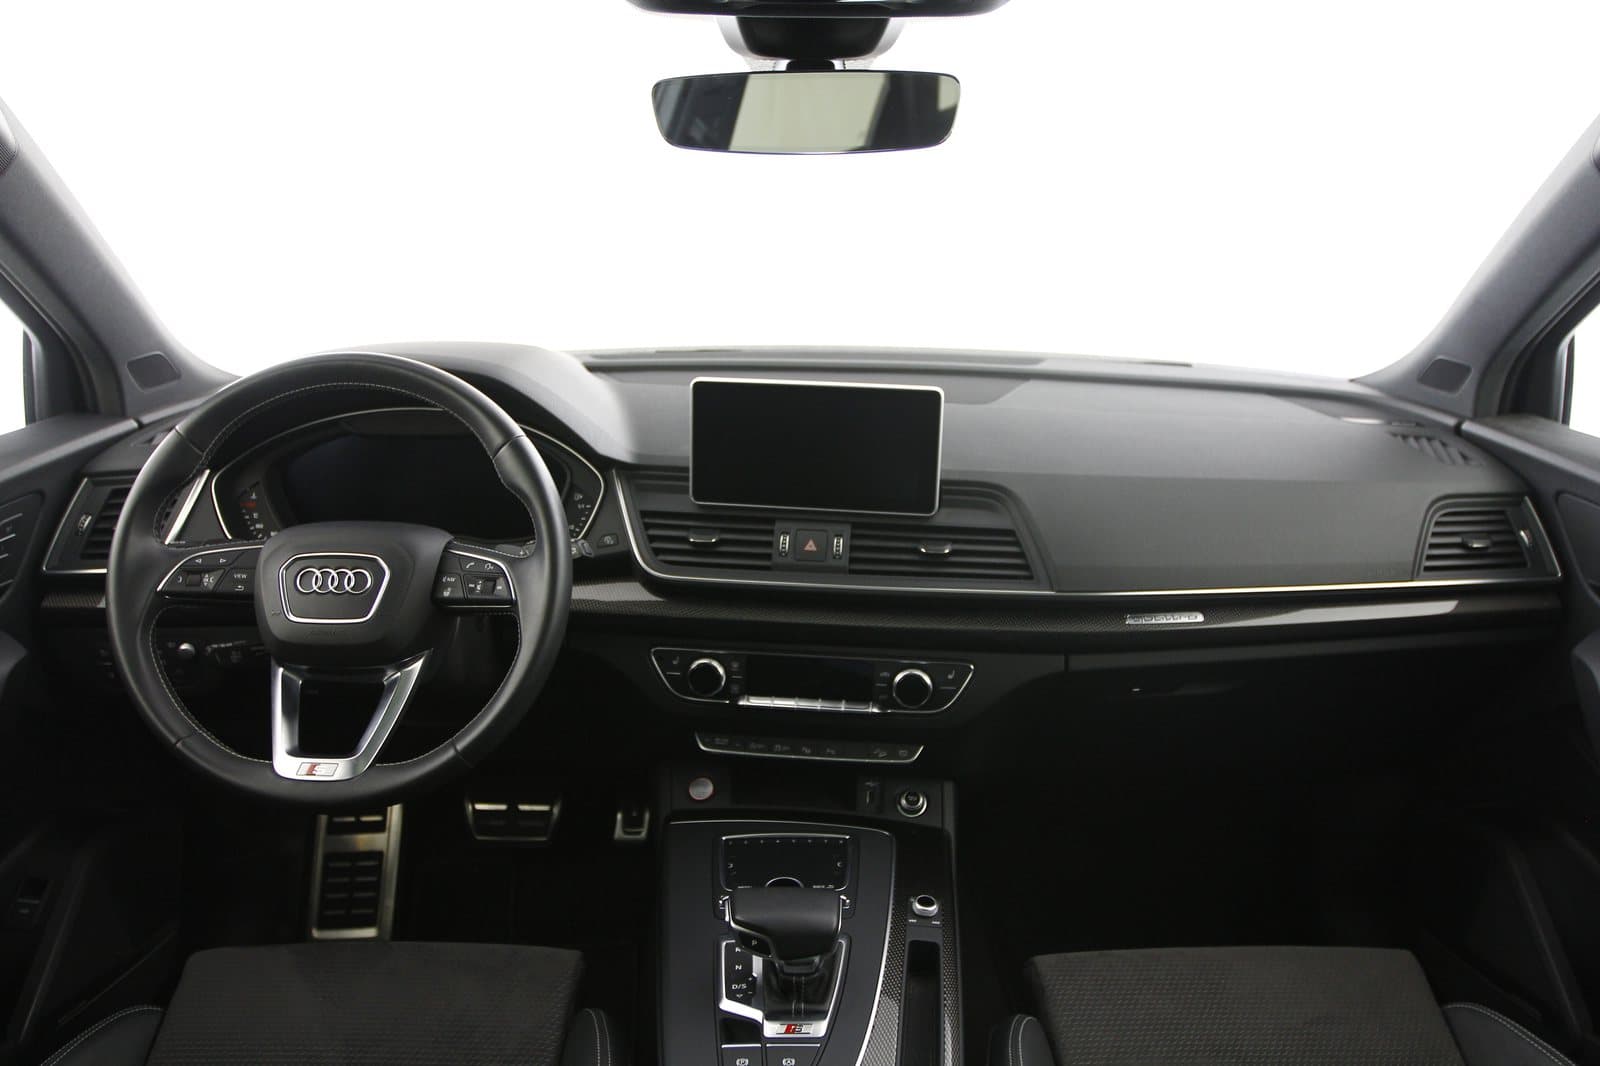 Audi - SQ5 3.0 TFSI quattro - 2190467 - Teaser - Interieur (1).JPG